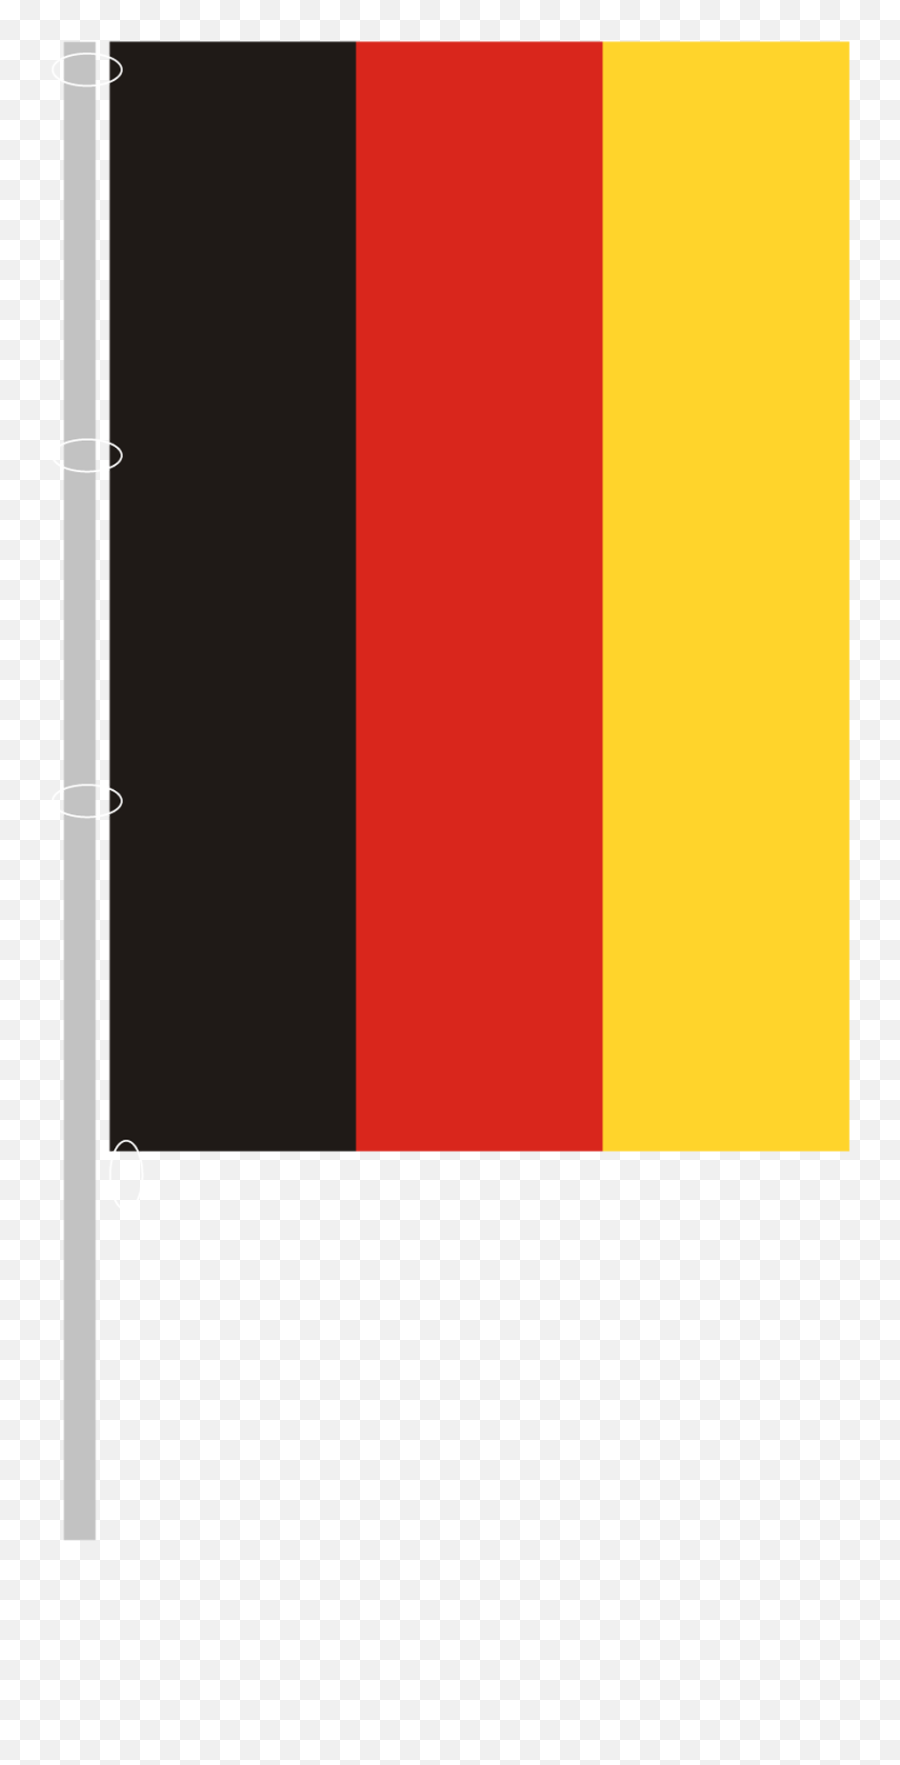 German Flag - Flag Png Download Original Size Png Image Flag,German Flag Png